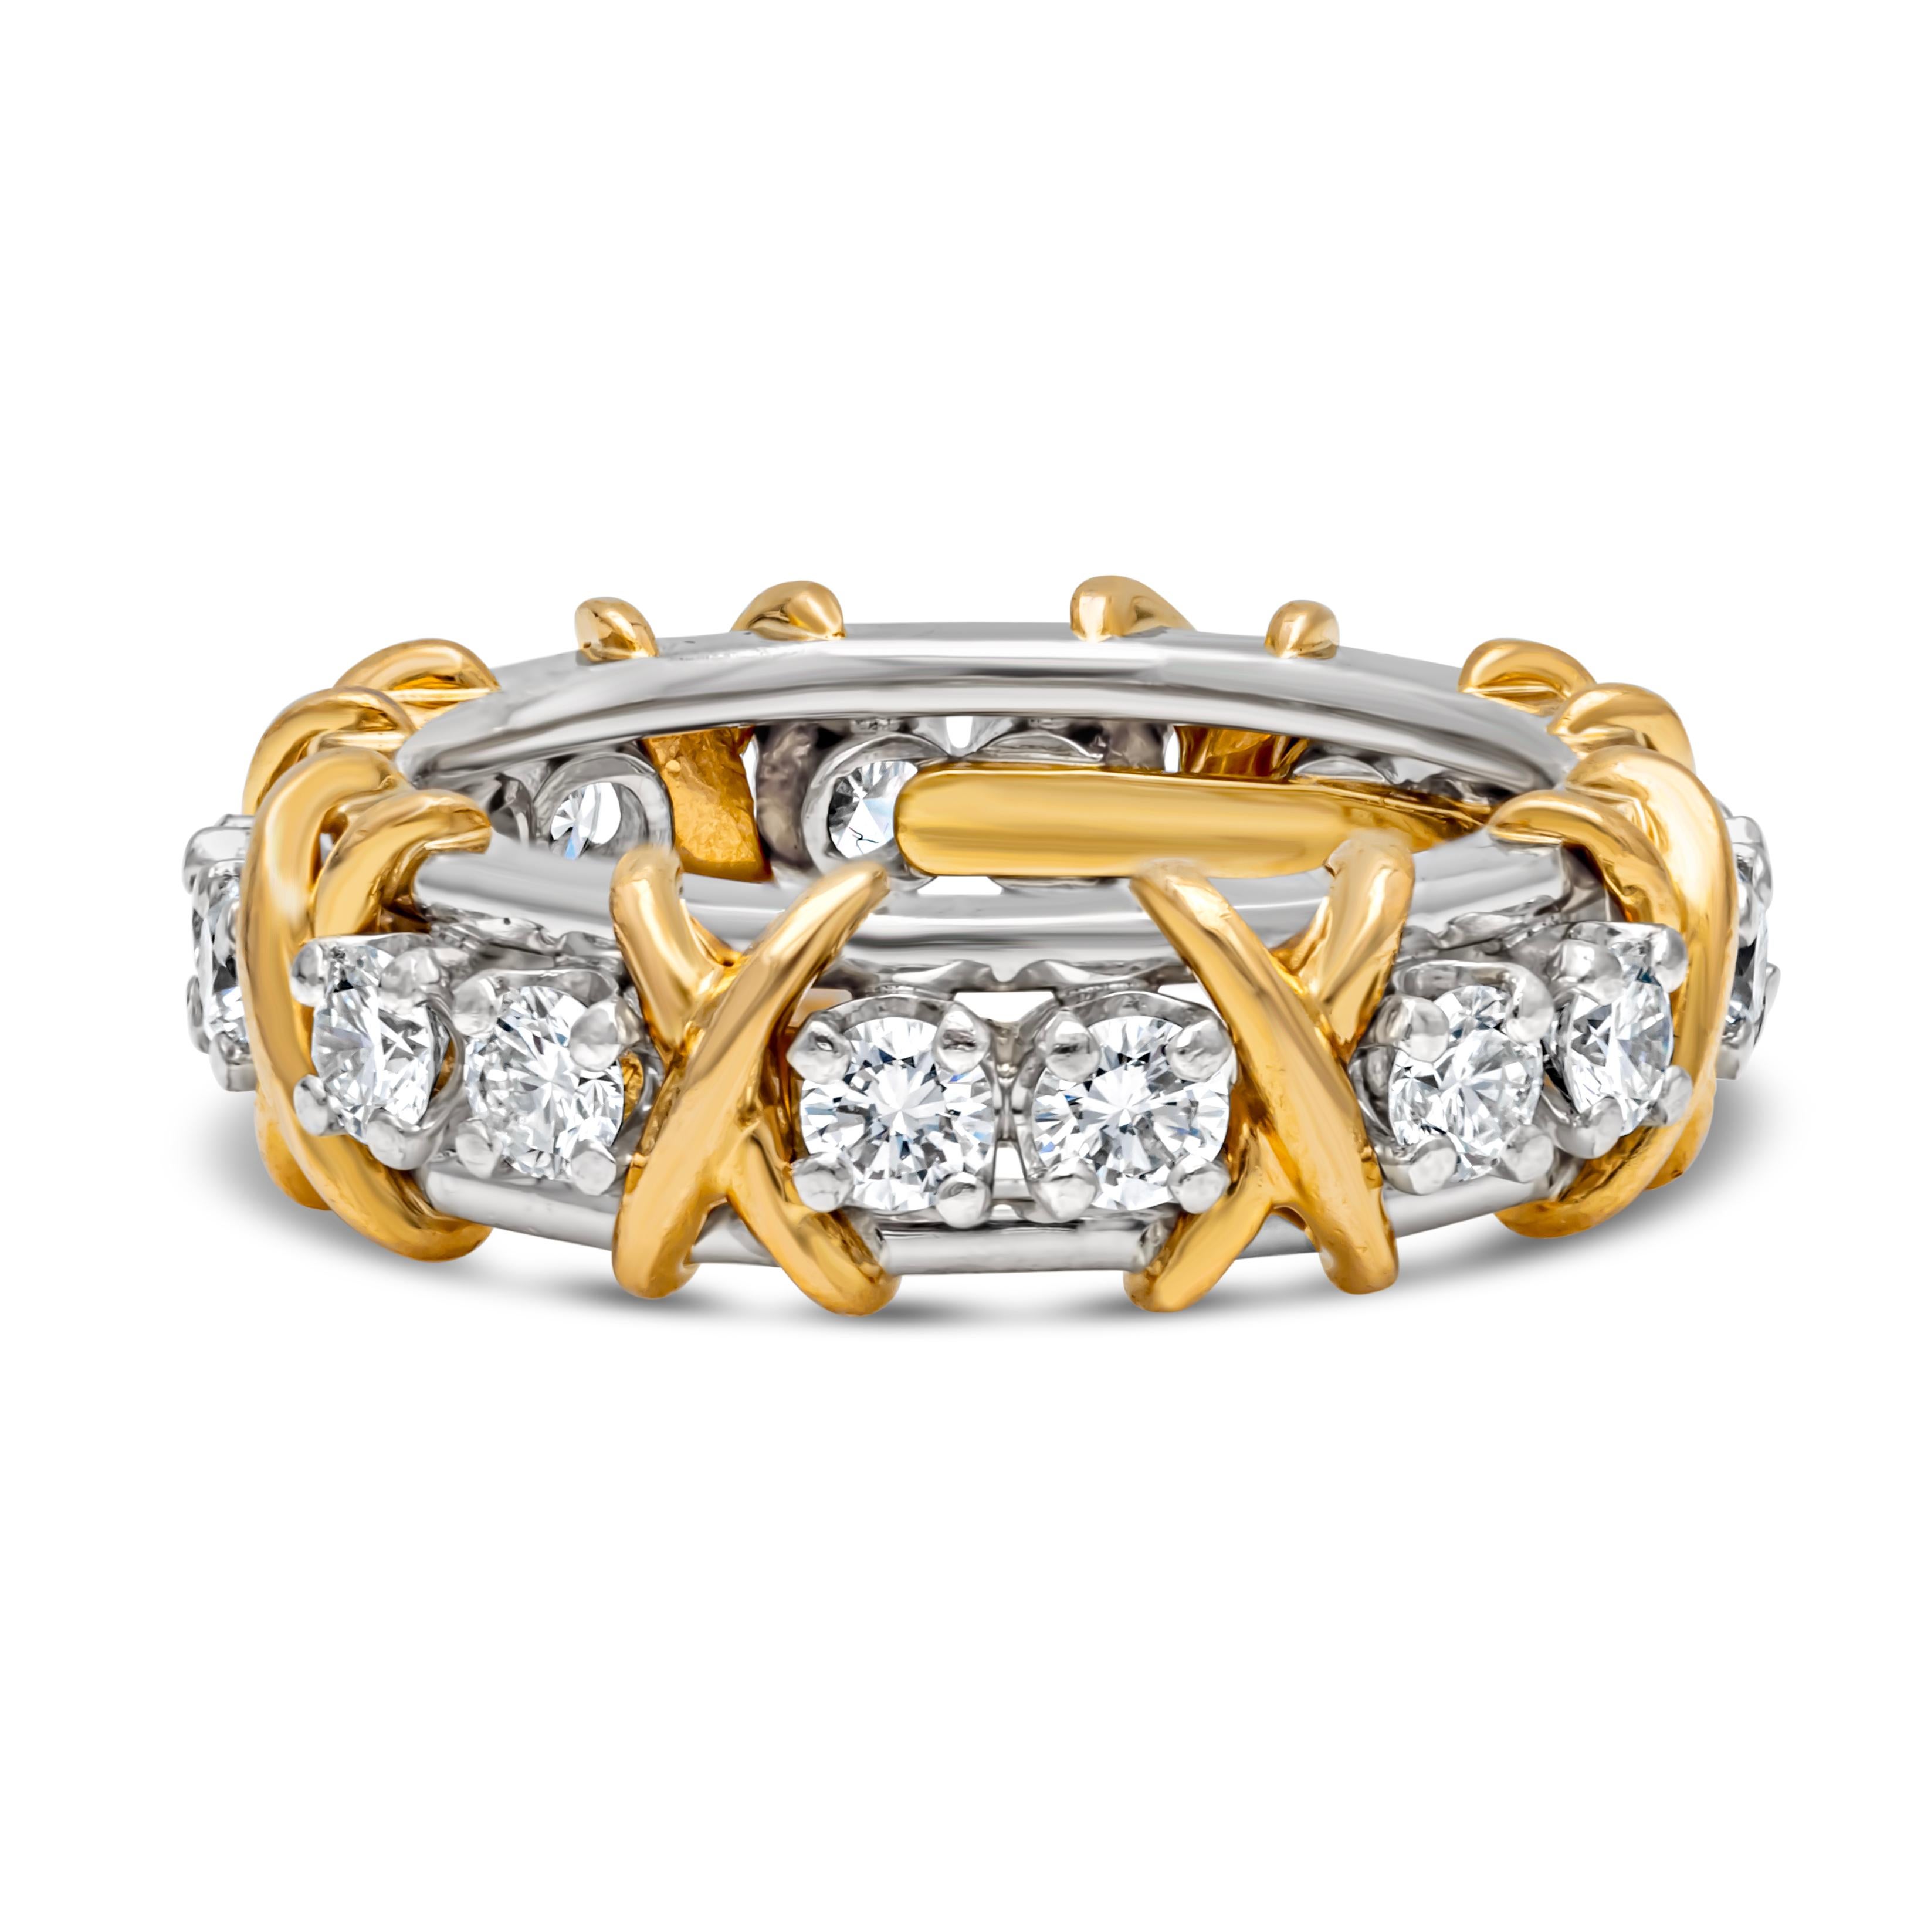 Signiert von Tiffany & Co., ein wunderschönes und elegantes Ewigkeitsarmband mit einem runden Diamanten von insgesamt 1,14 Karat, gefasst in einer vierzackigen Fassung. Ewigkeit in einer offenen Galerie-Fassung und fein gemacht mit Platinband und